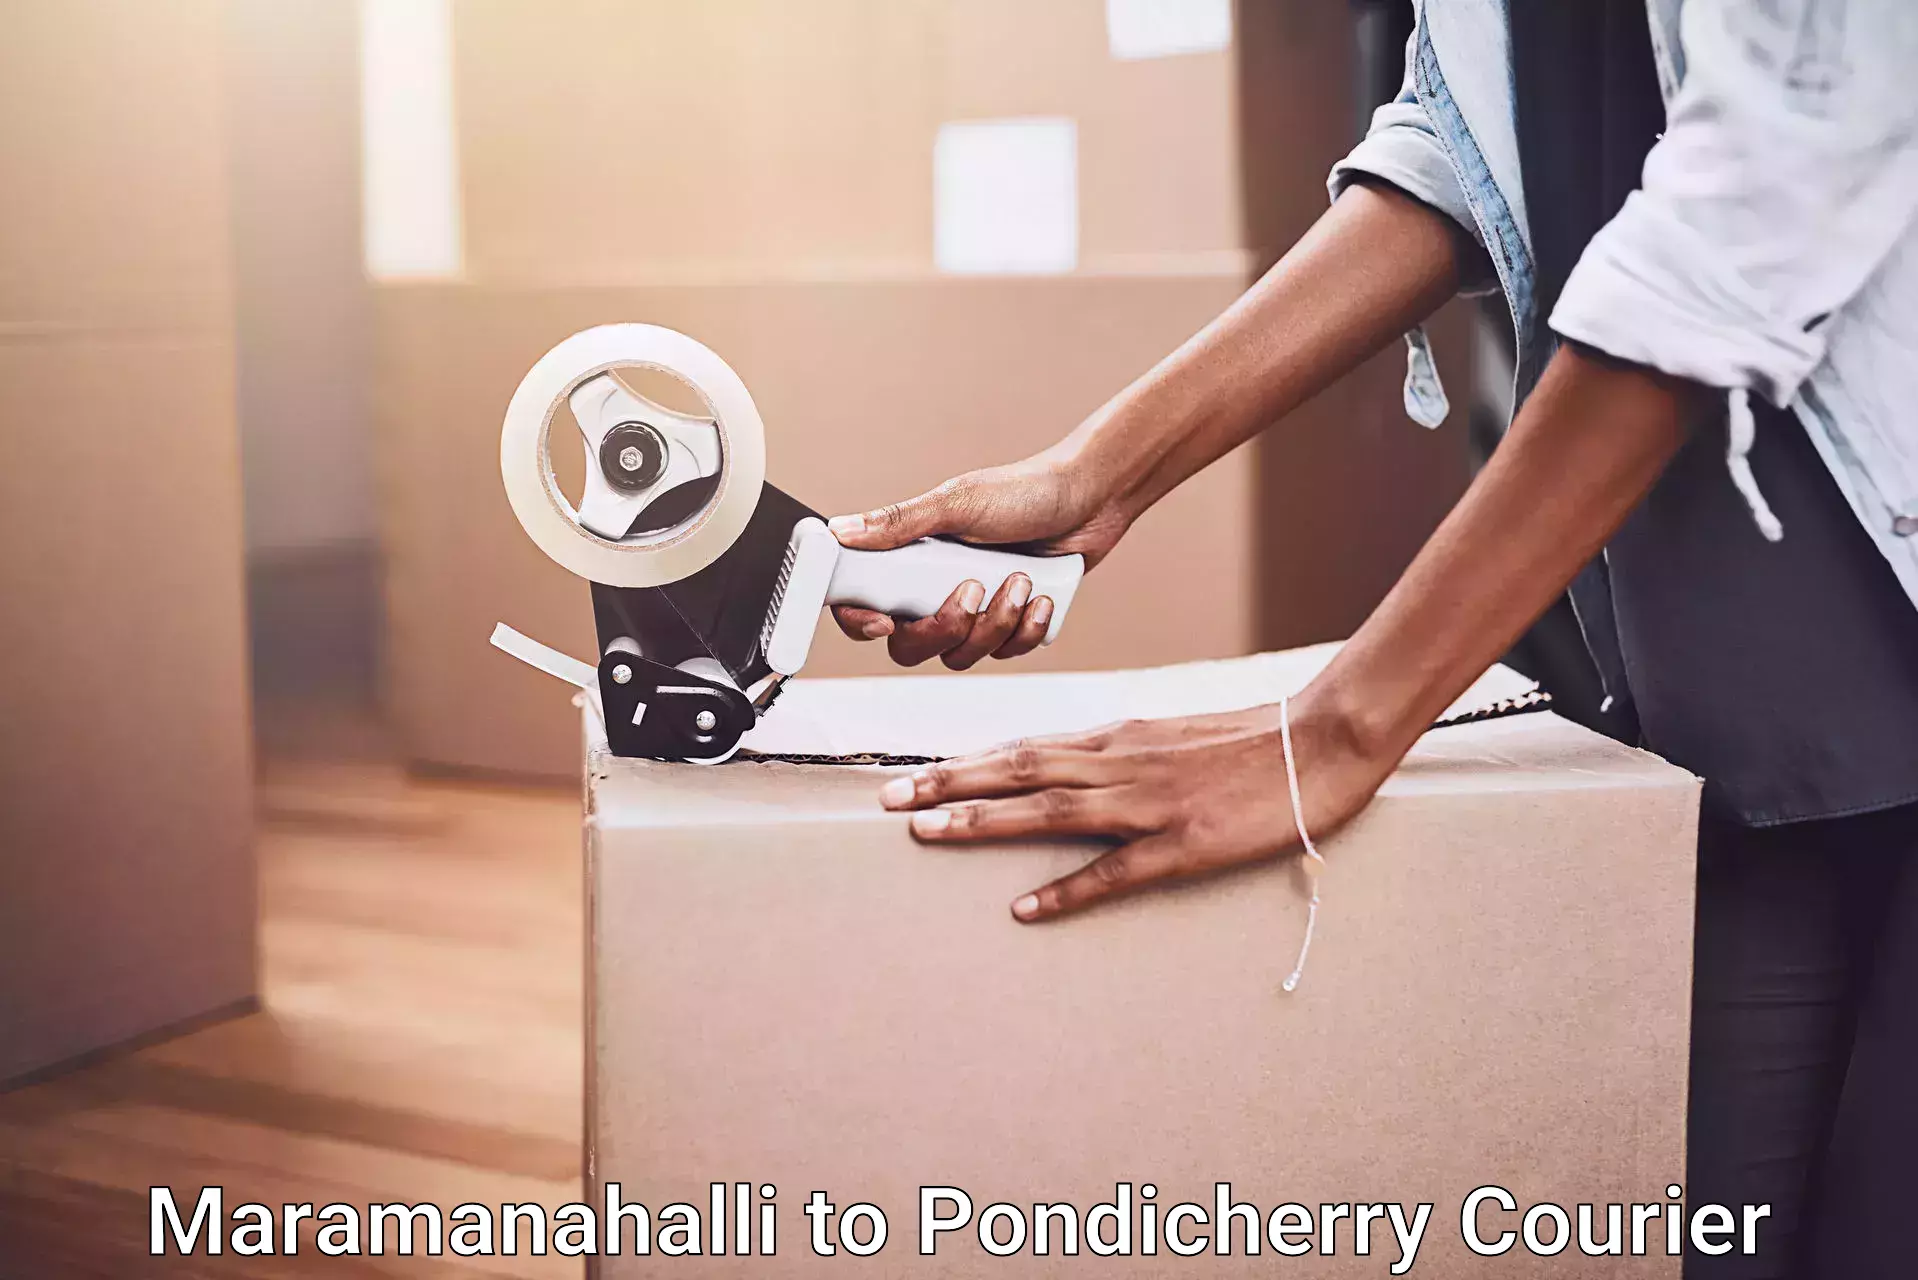 Furniture moving and handling Maramanahalli to Pondicherry